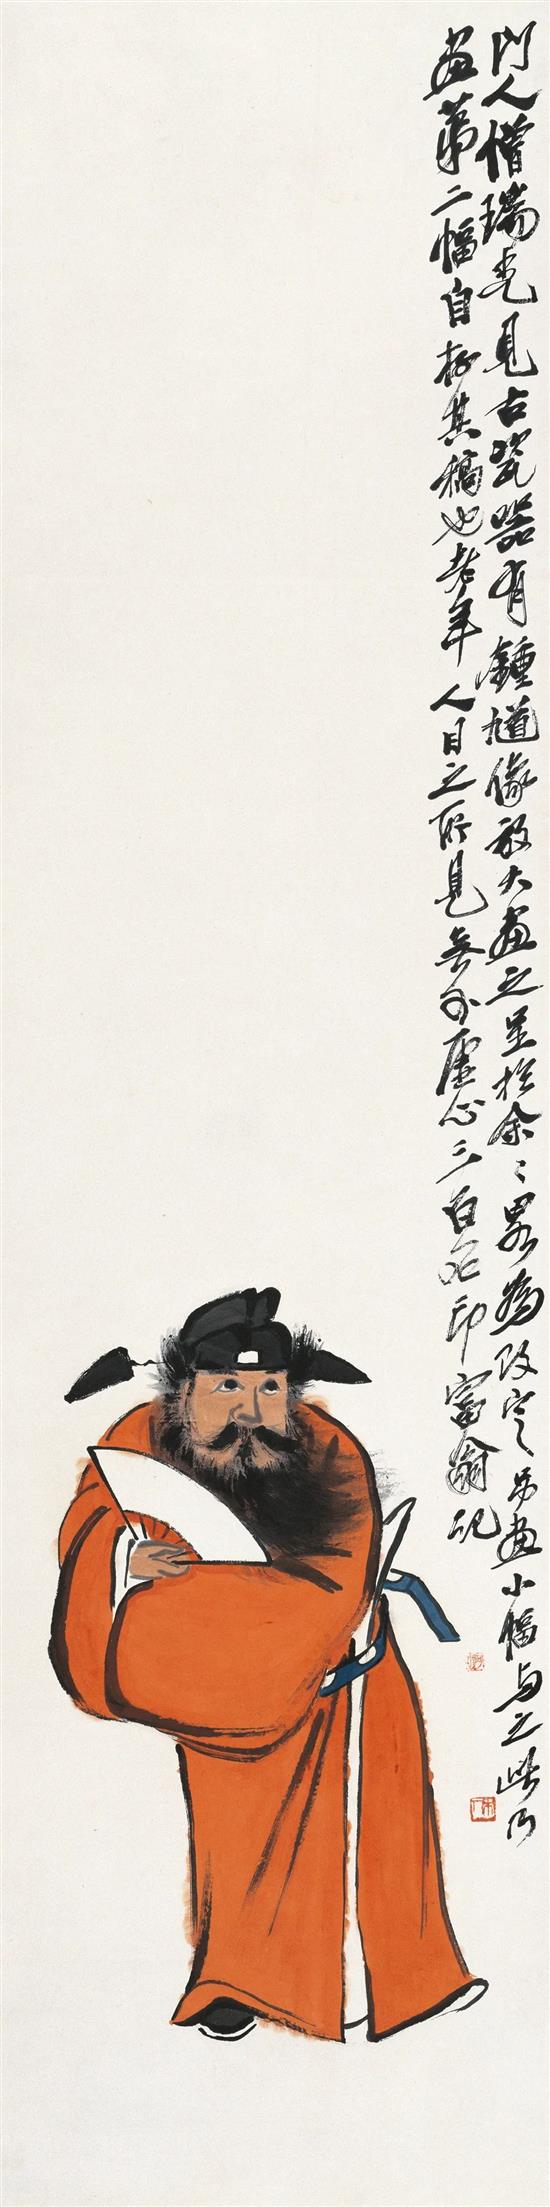 钟馗图 齐白石 无年款133.5×33.5cm纸本设色 北京画院藏